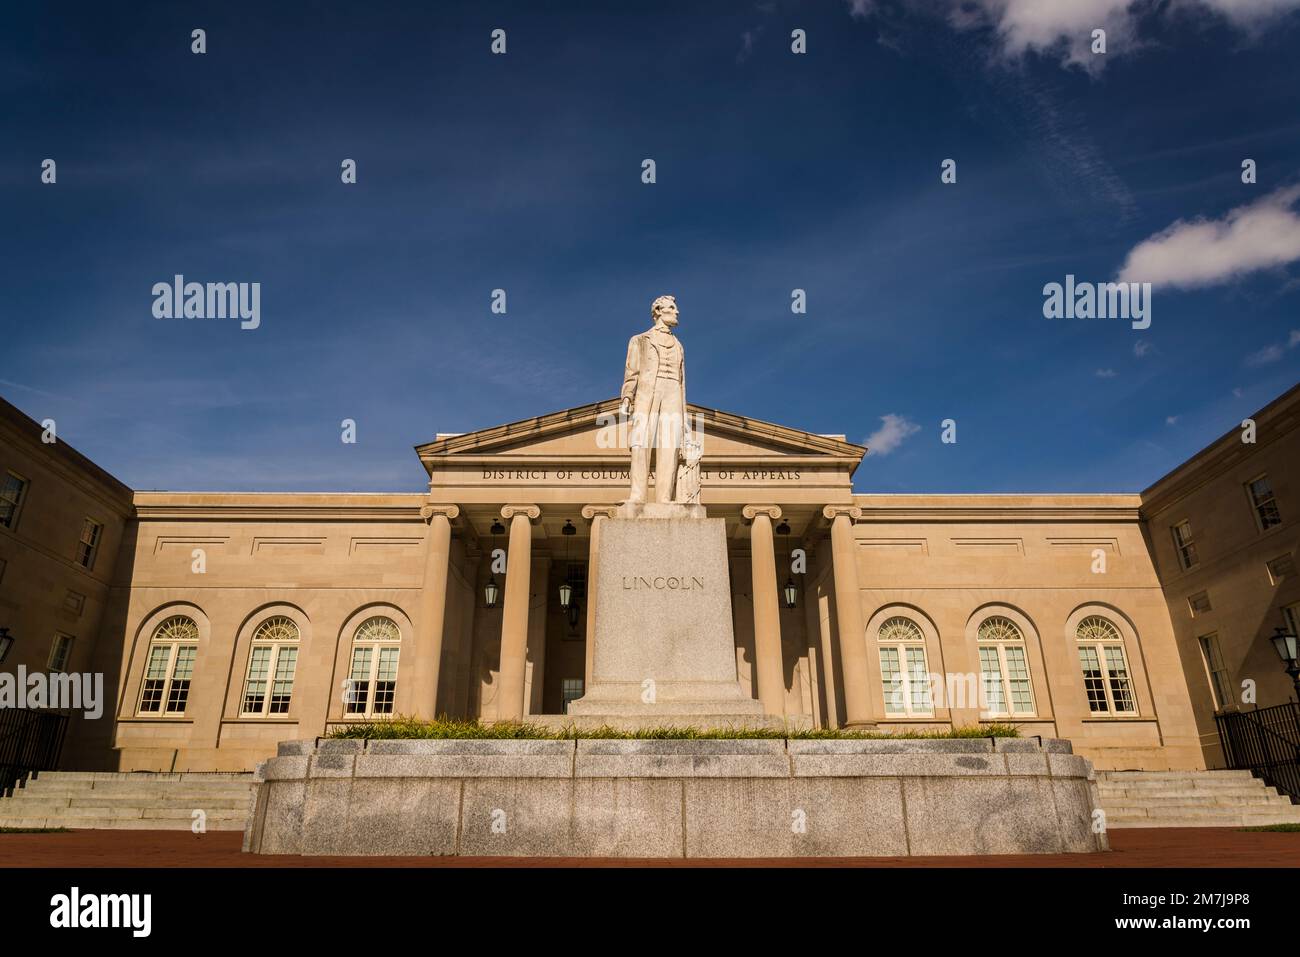 Statue d'Abraham Lincoln devant la Cour d'appel du district de Columbia, située dans l'ancien D.C. Hôtel de ville, un site historique national, Wash Banque D'Images